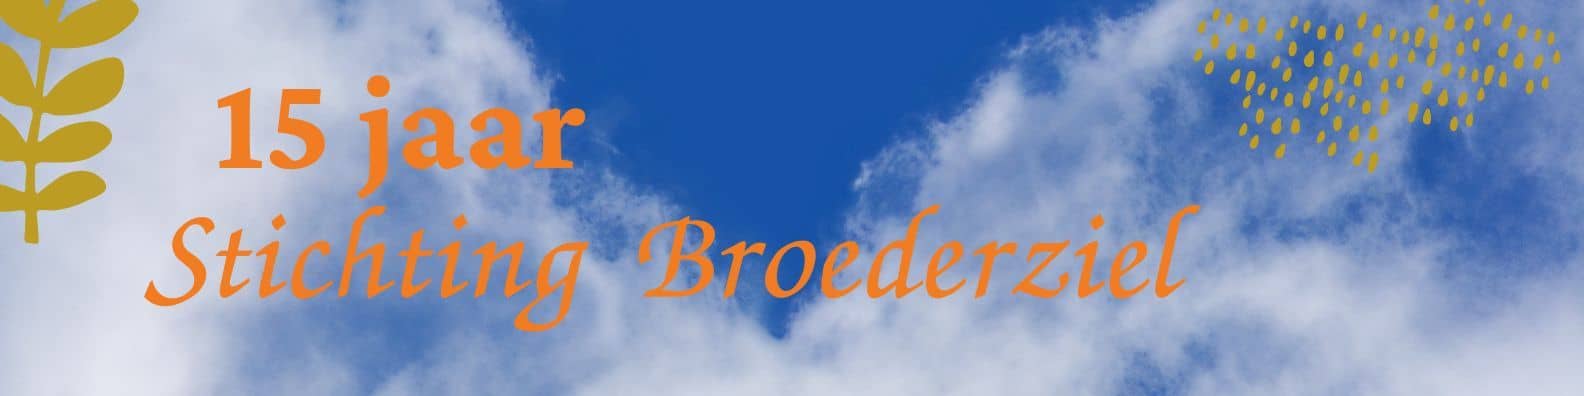 Banner 15 jaar Stichting Broederziel